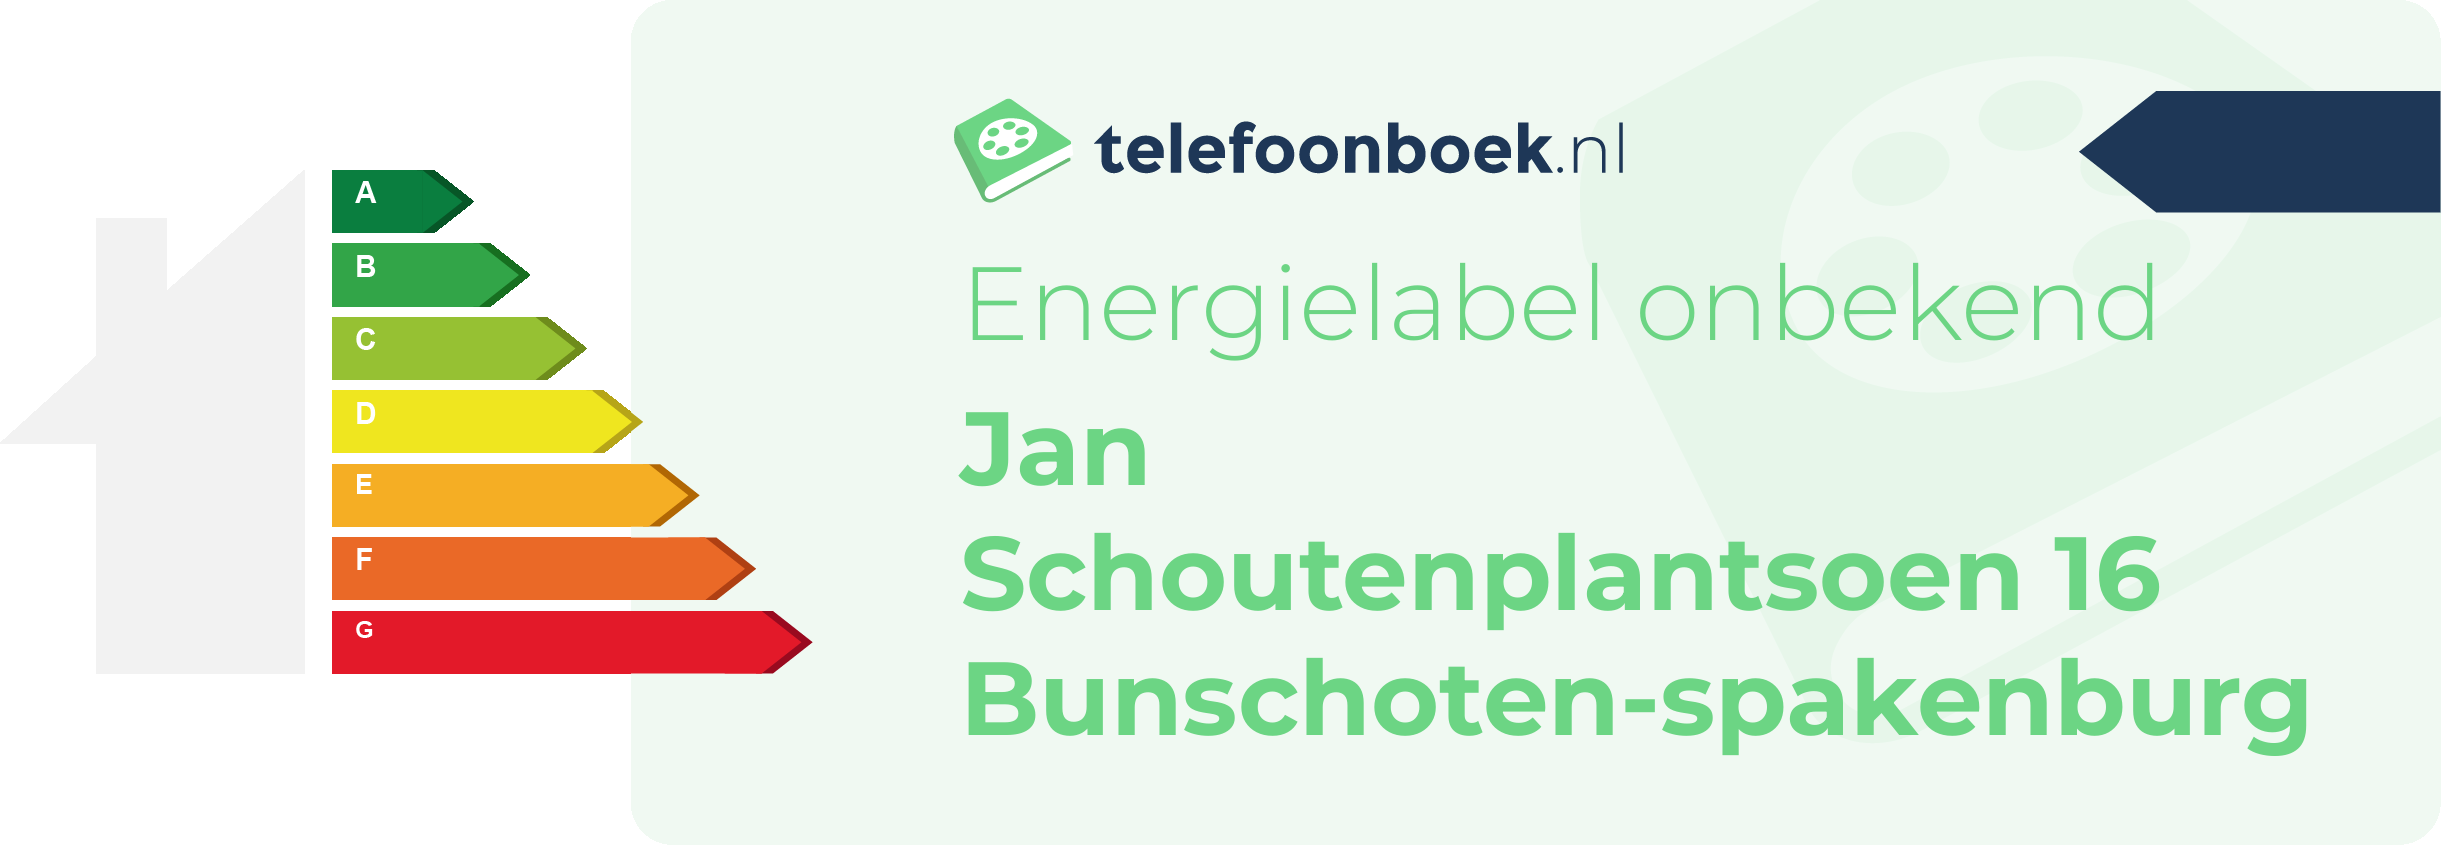 Energielabel Jan Schoutenplantsoen 16 Bunschoten-Spakenburg